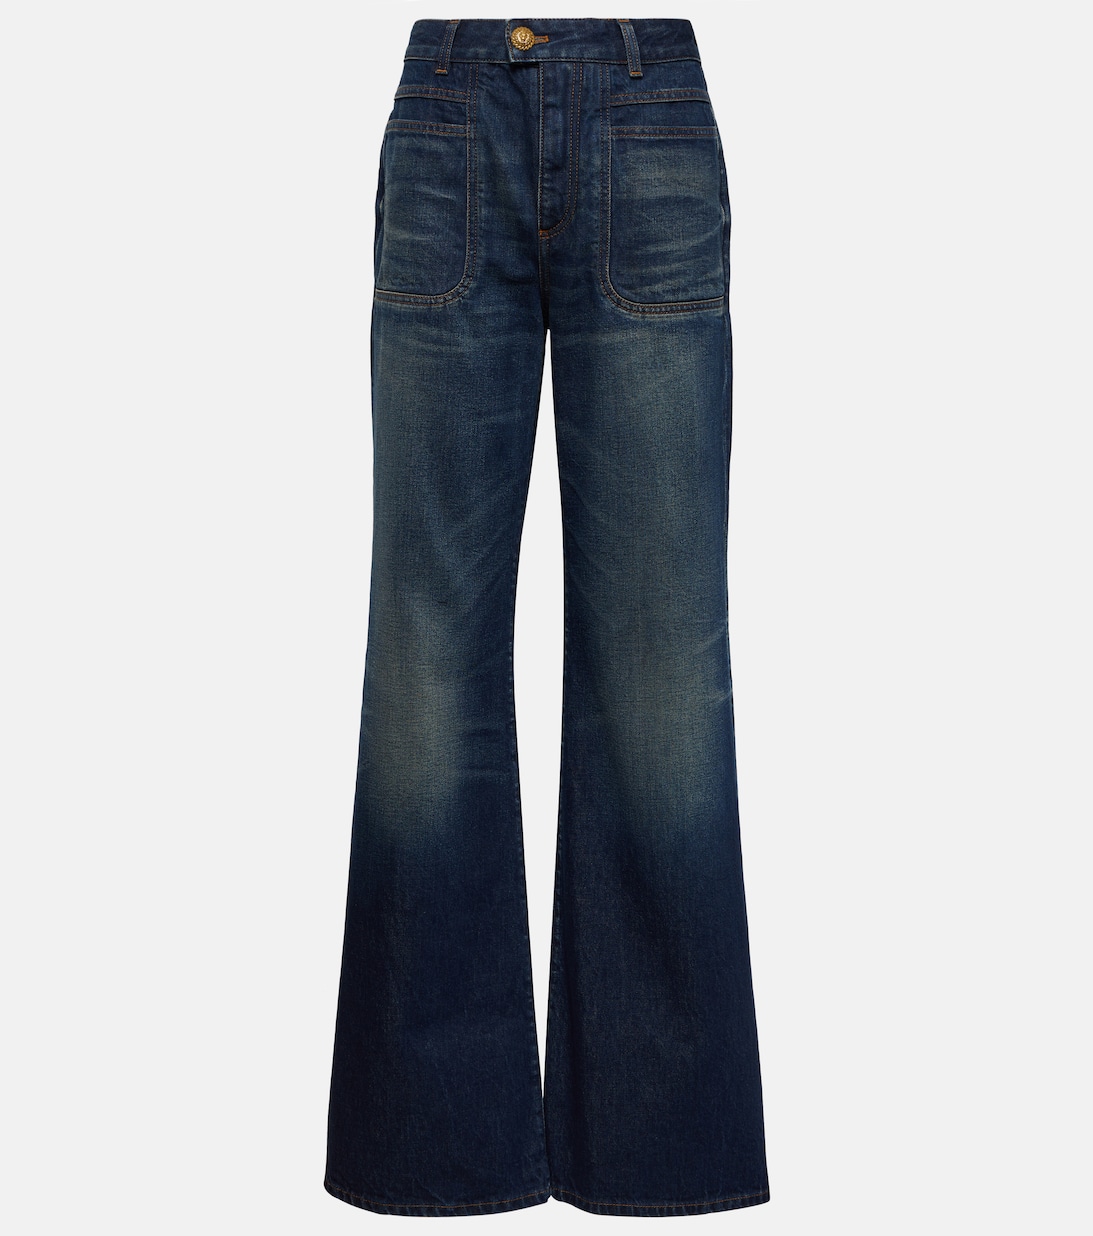 Расклешенные джинсы с высокой посадкой BALMAIN, синий джинсы paige laurel canyon расклешенные с высокой посадкой синий